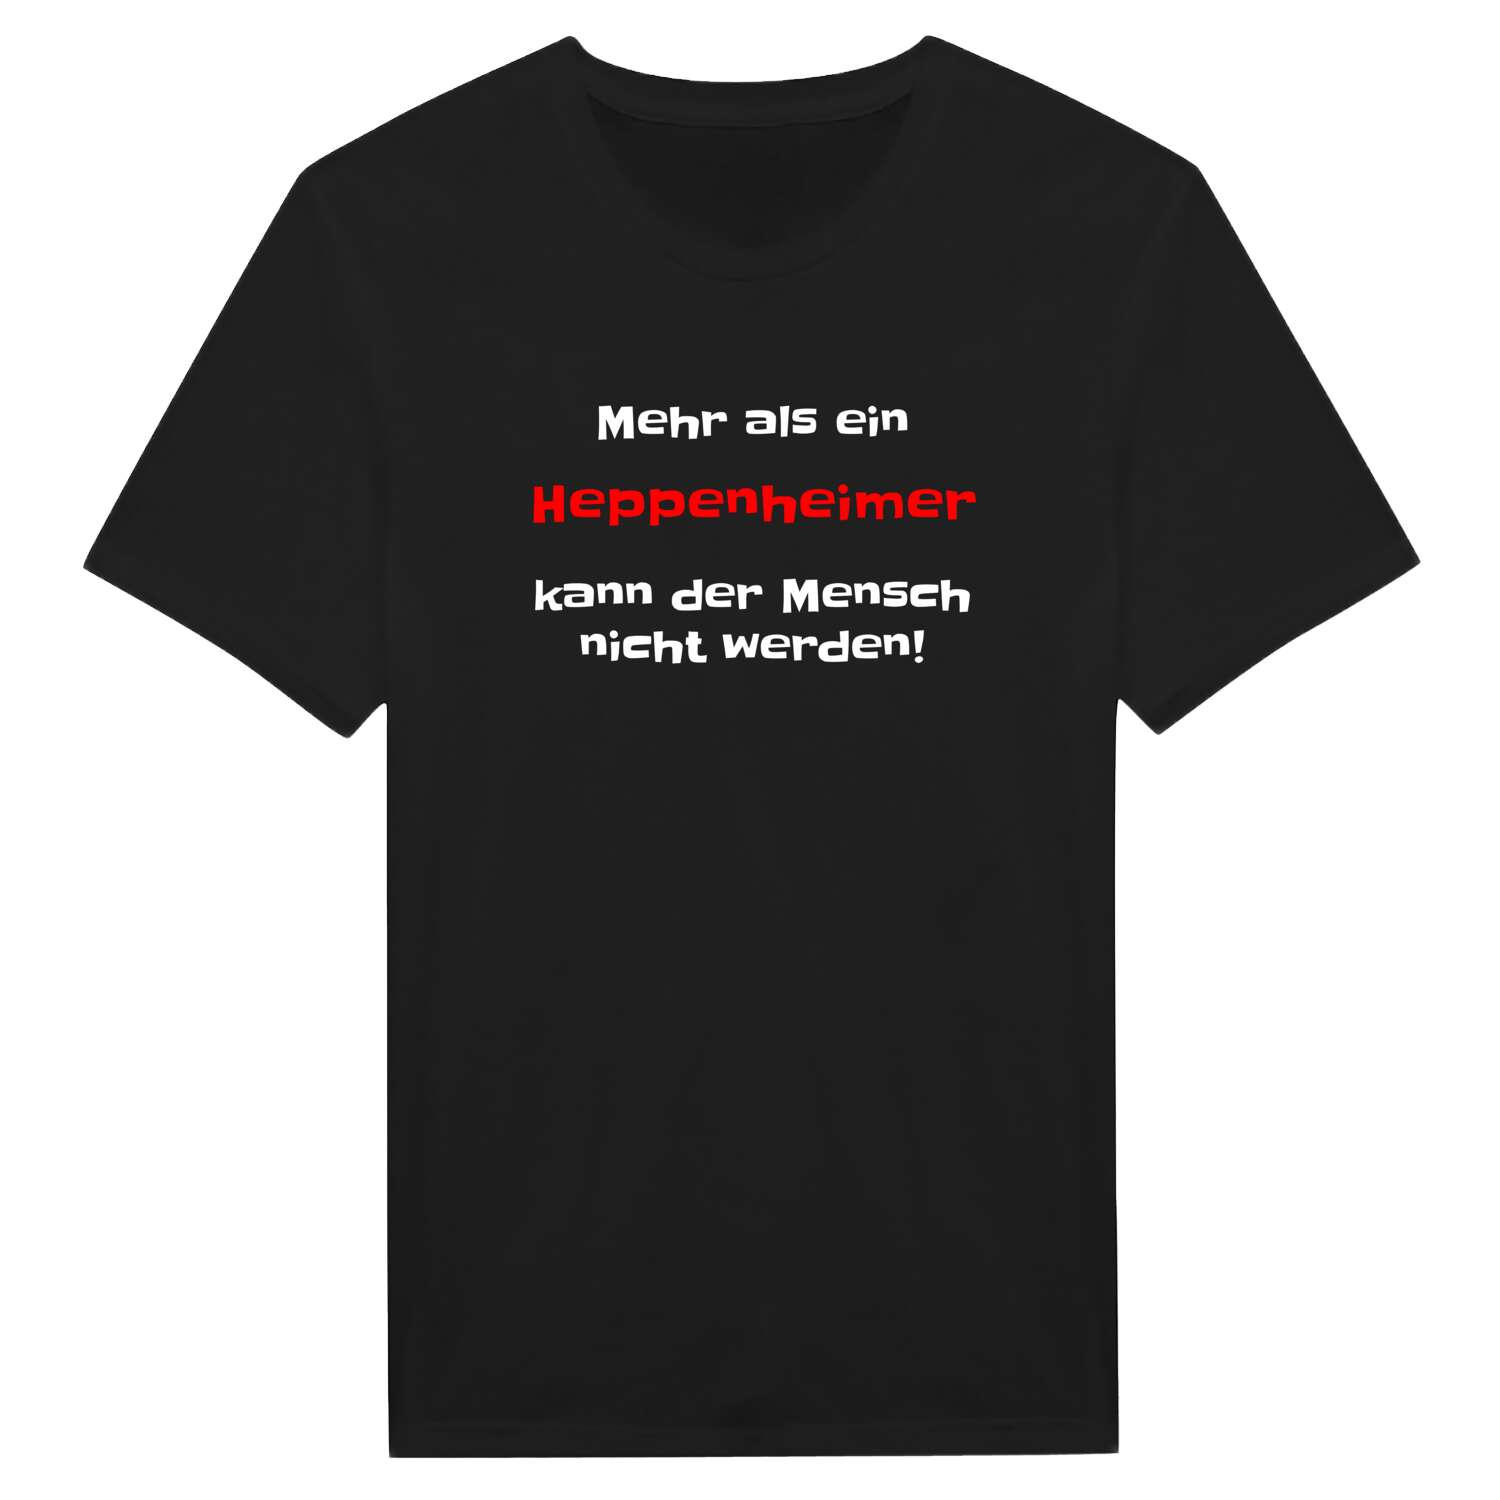 Heppenheim T-Shirt »Mehr als ein«